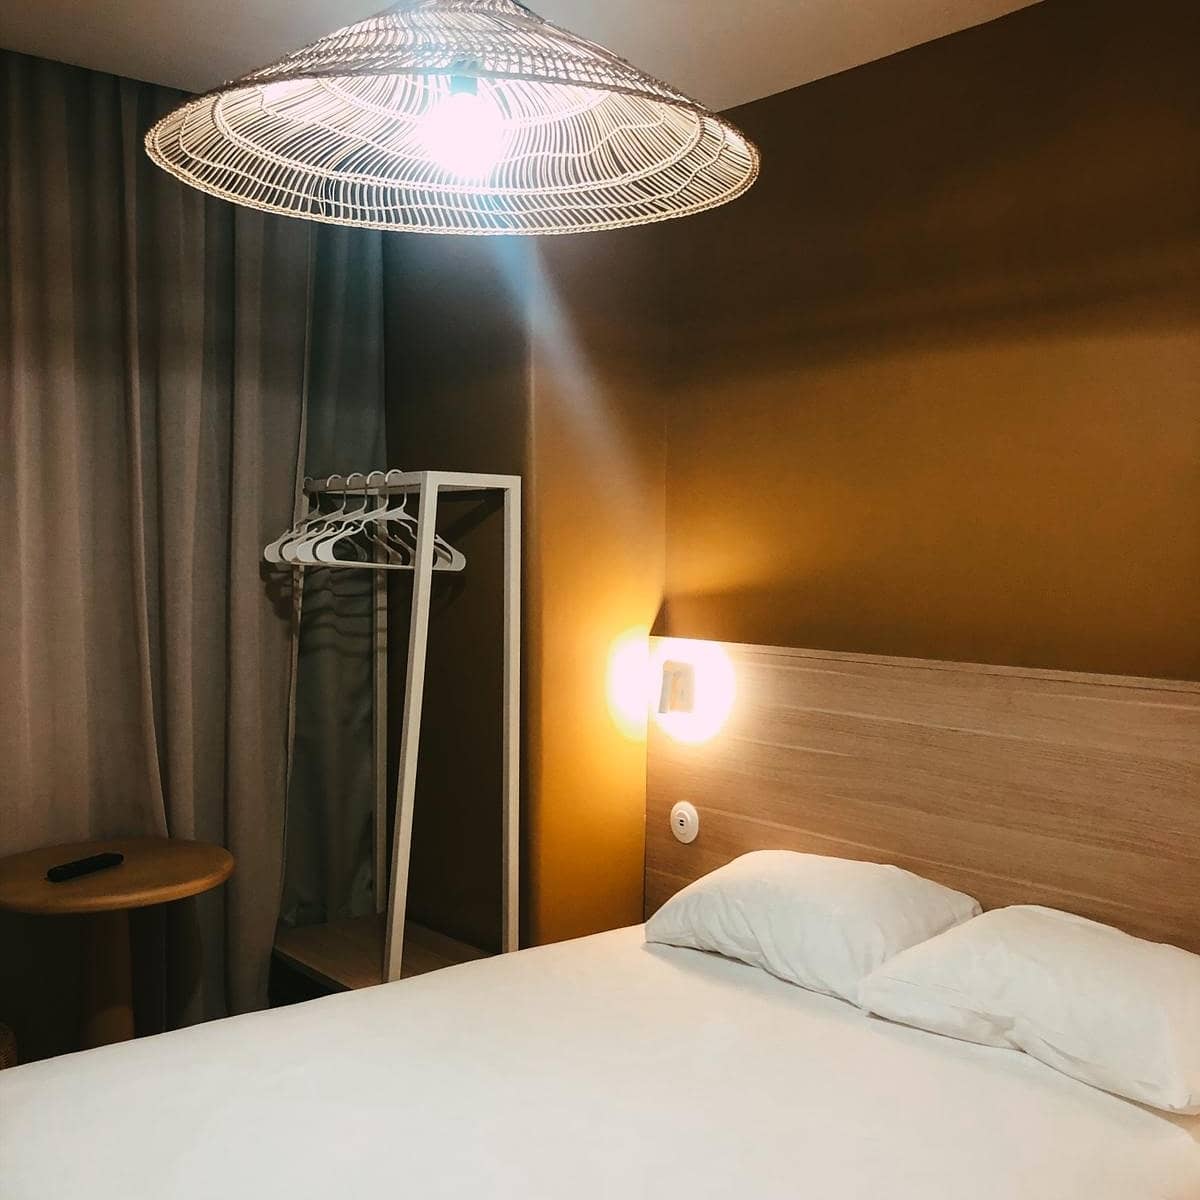 Lifeuses, Lifeurs,

Here we are 🙌🏼

Les chambres Cocoon et Cocoon Vue Vieux Port sont prêtes à vous accueillir 🛏️

#happiness#hotel#lifemarseille#vuevieuxport#design